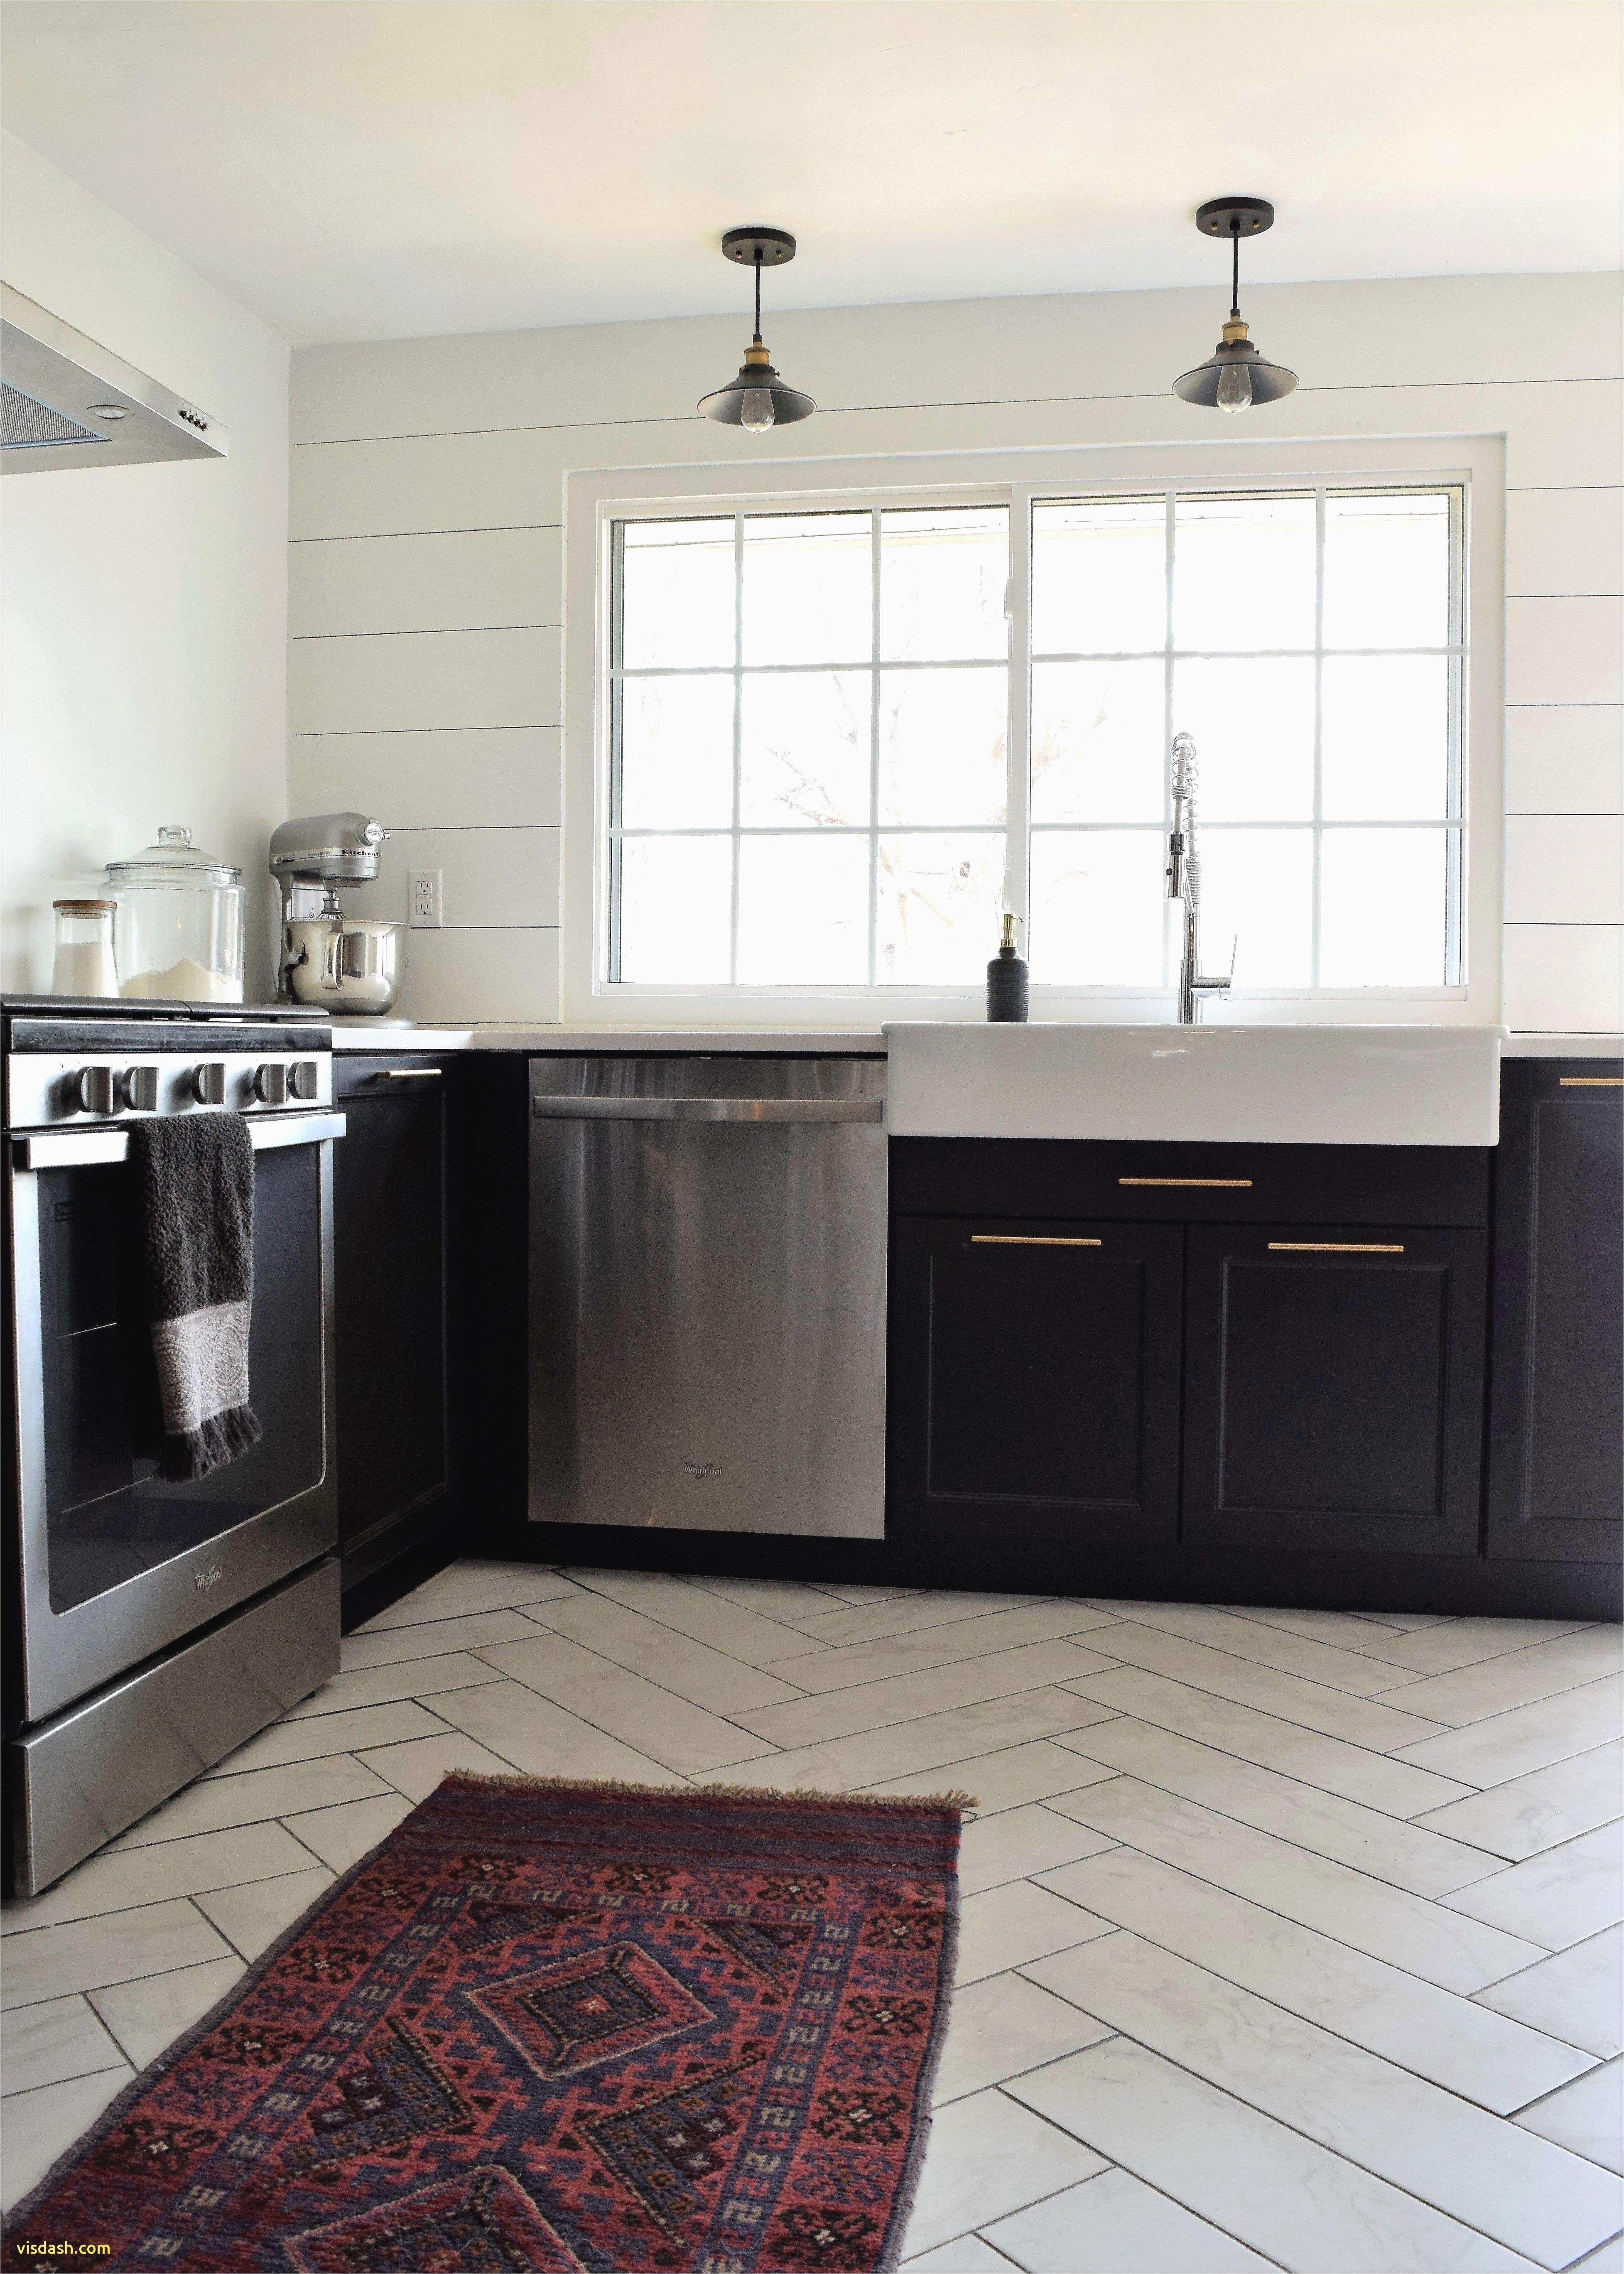 Standard Kitchen Cabinet Sizes Best 31 Standard Kitchen Cabinet Sizes norwin Home Design